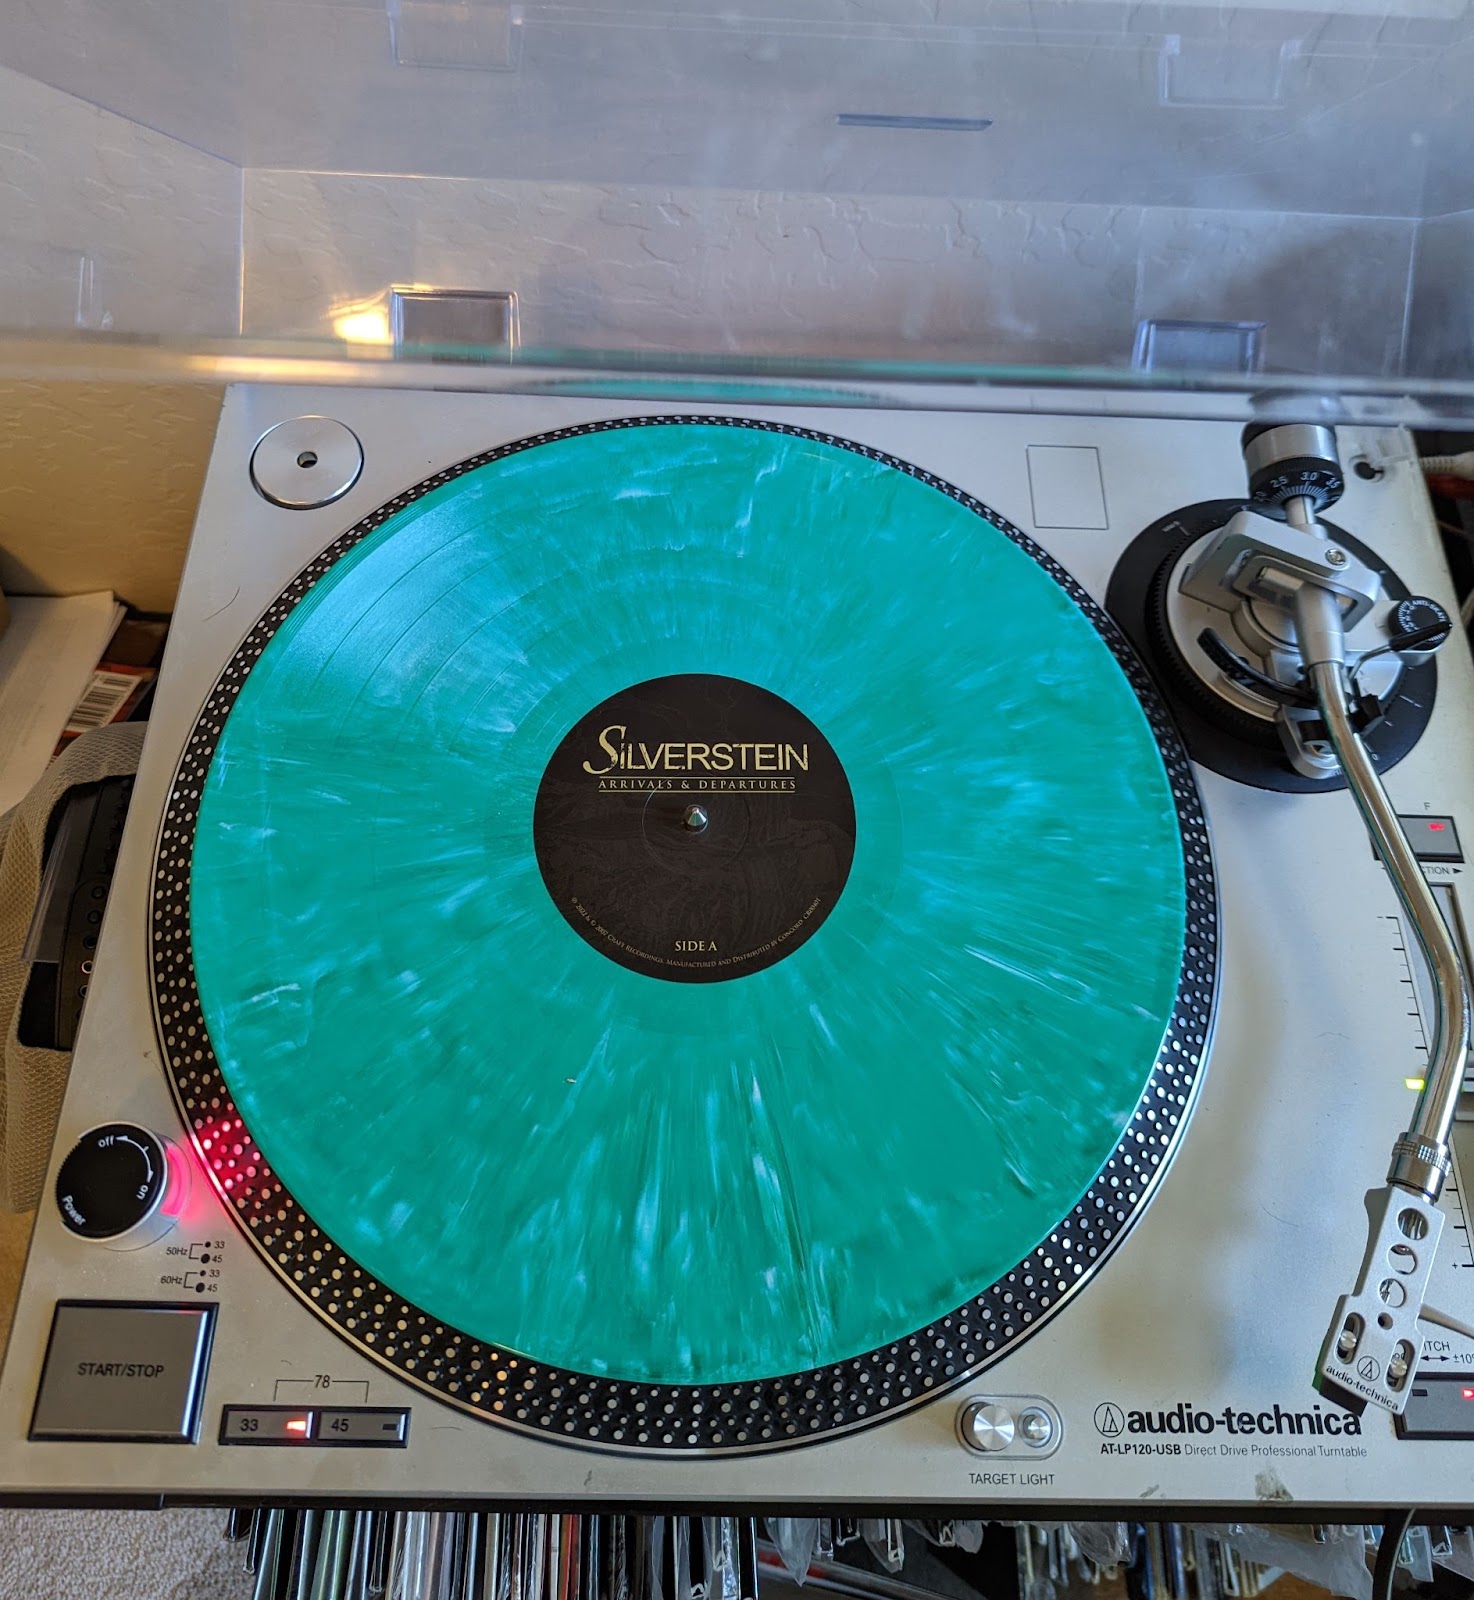 Divisive Translucent Green Vinyl LP